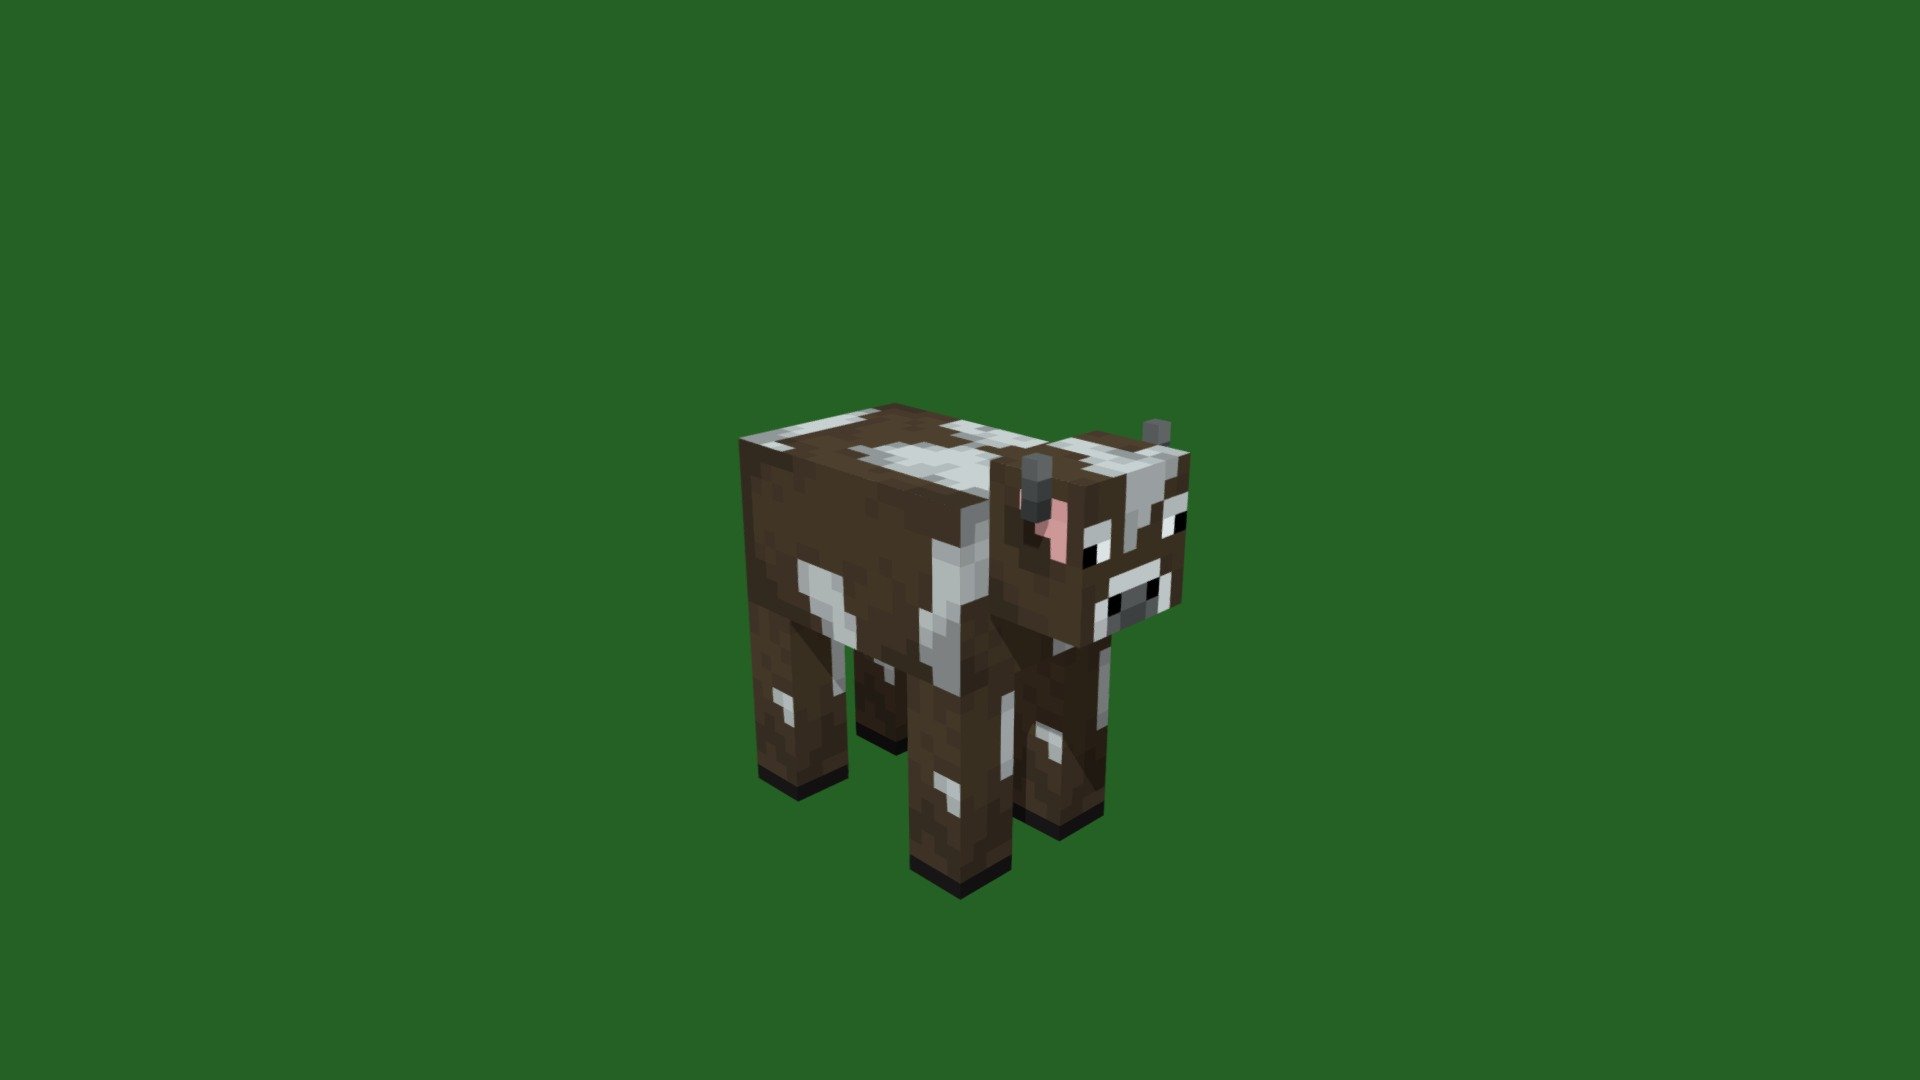 Lại thêm một mô hình 3D đẹp lung linh về những chú bò trong Minecraft đang chờ đón bạn tải về miễn phí. Nhanh tay tải ngay để chiêm ngưỡng sự đẹp của chúng trong trò chơi Minecraft. 